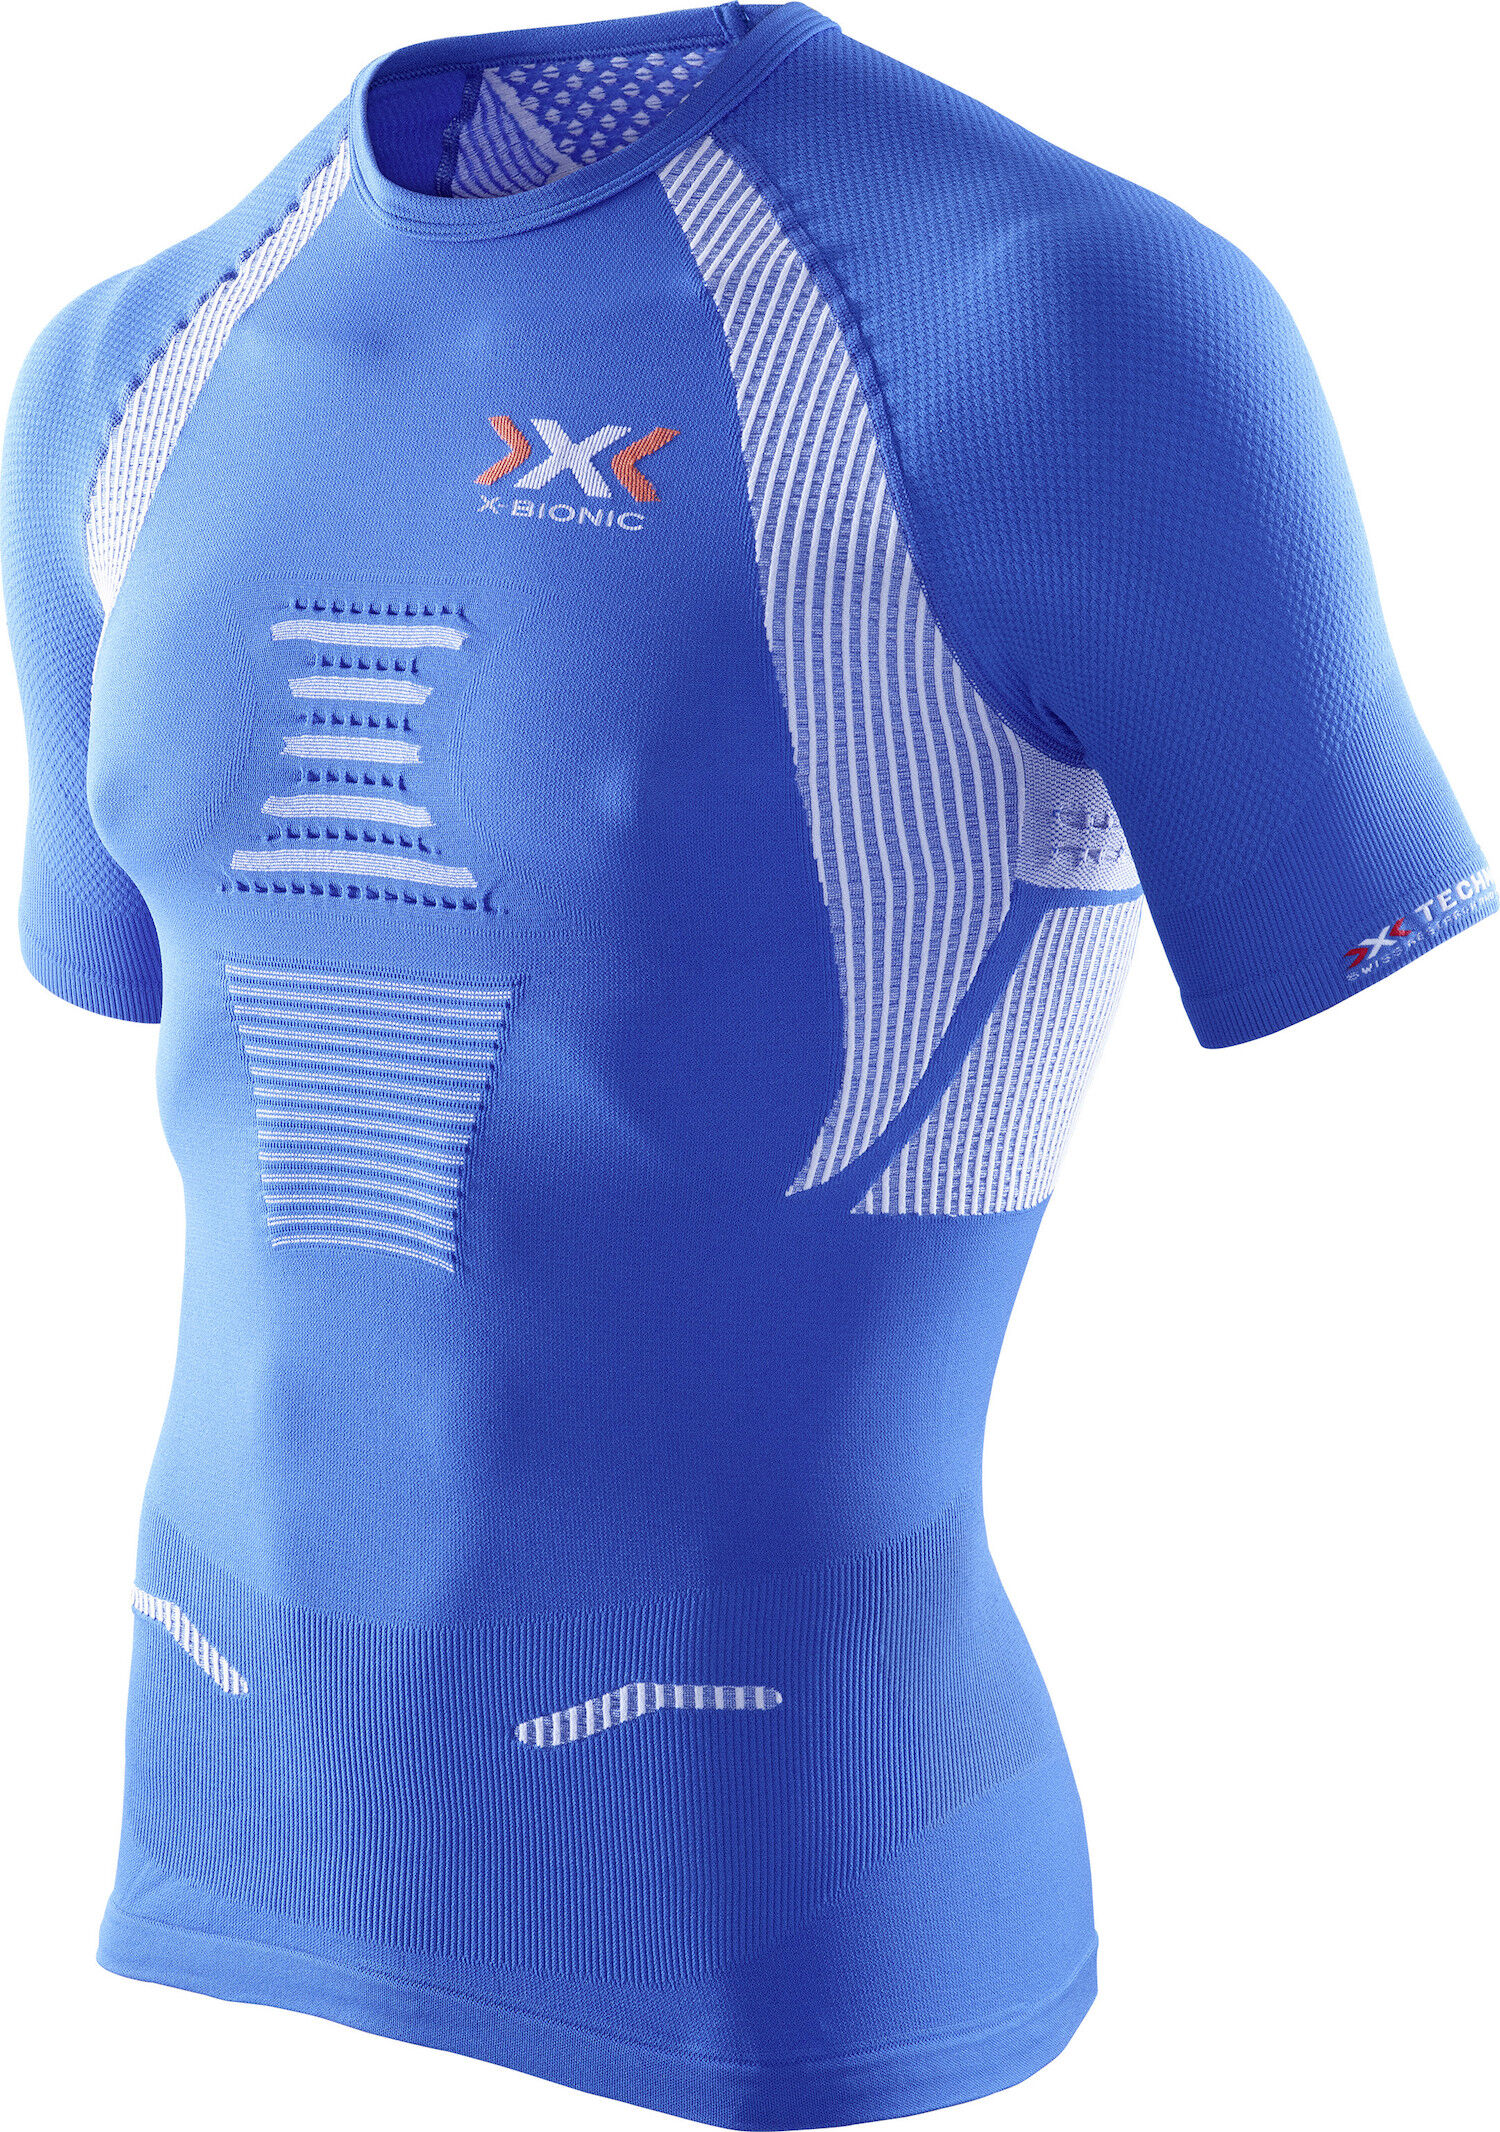 X-Bionic - The Trick - Camiseta - Hombre